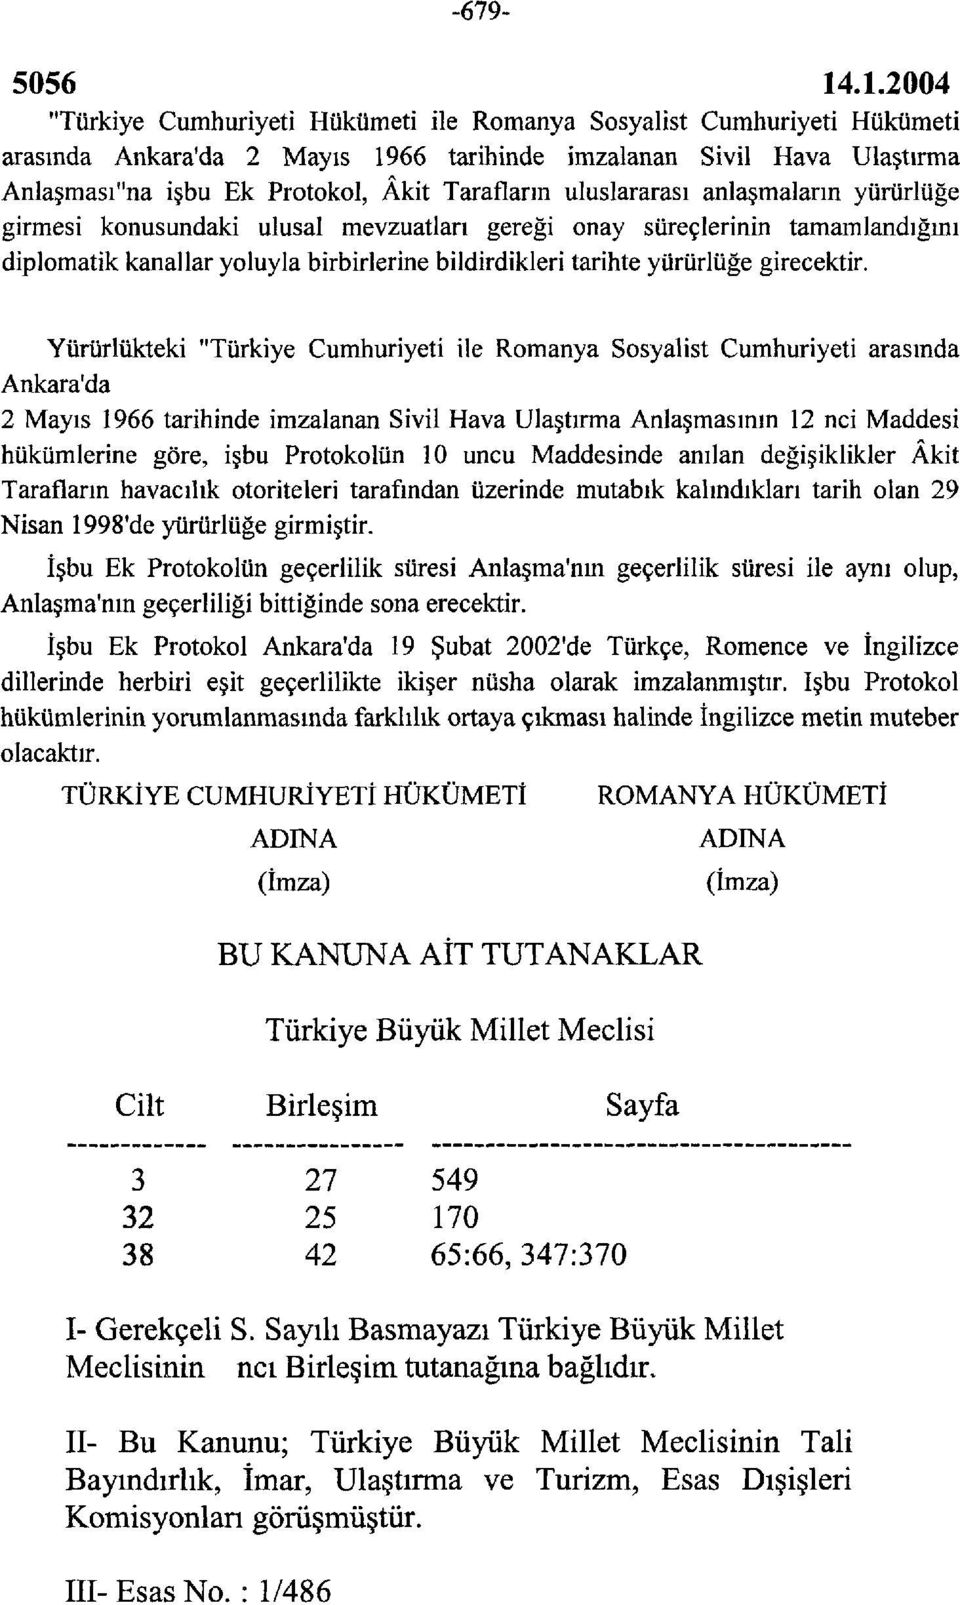 Yürürlükteki "Türkiye Cumhuriyeti ile Romanya Sosyalist Cumhuriyeti arasında Ankara'da 2 Mayıs 1966 tarihinde imzalanan Sivil Hava Ulaştırma Anlaşmasının 12 nci Maddesi hükümlerine göre, işbu